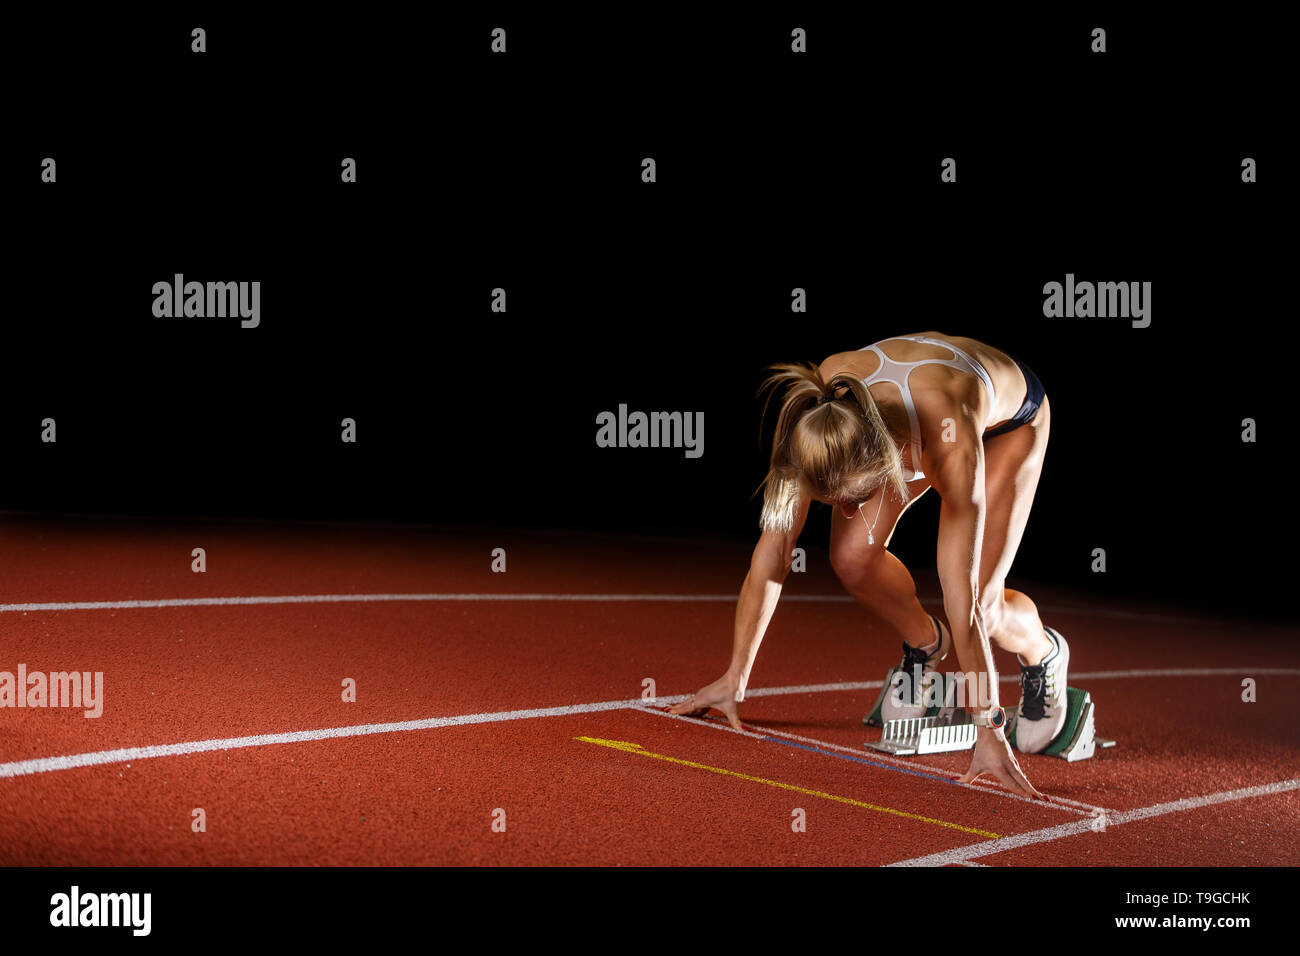 Läuferin Athlet starten laufen Sprint Rennen auf der Bahn. Leichtathletik sportliche Konzept Bild isoliert auf Schwarz mit Kopie Raum Stockfoto